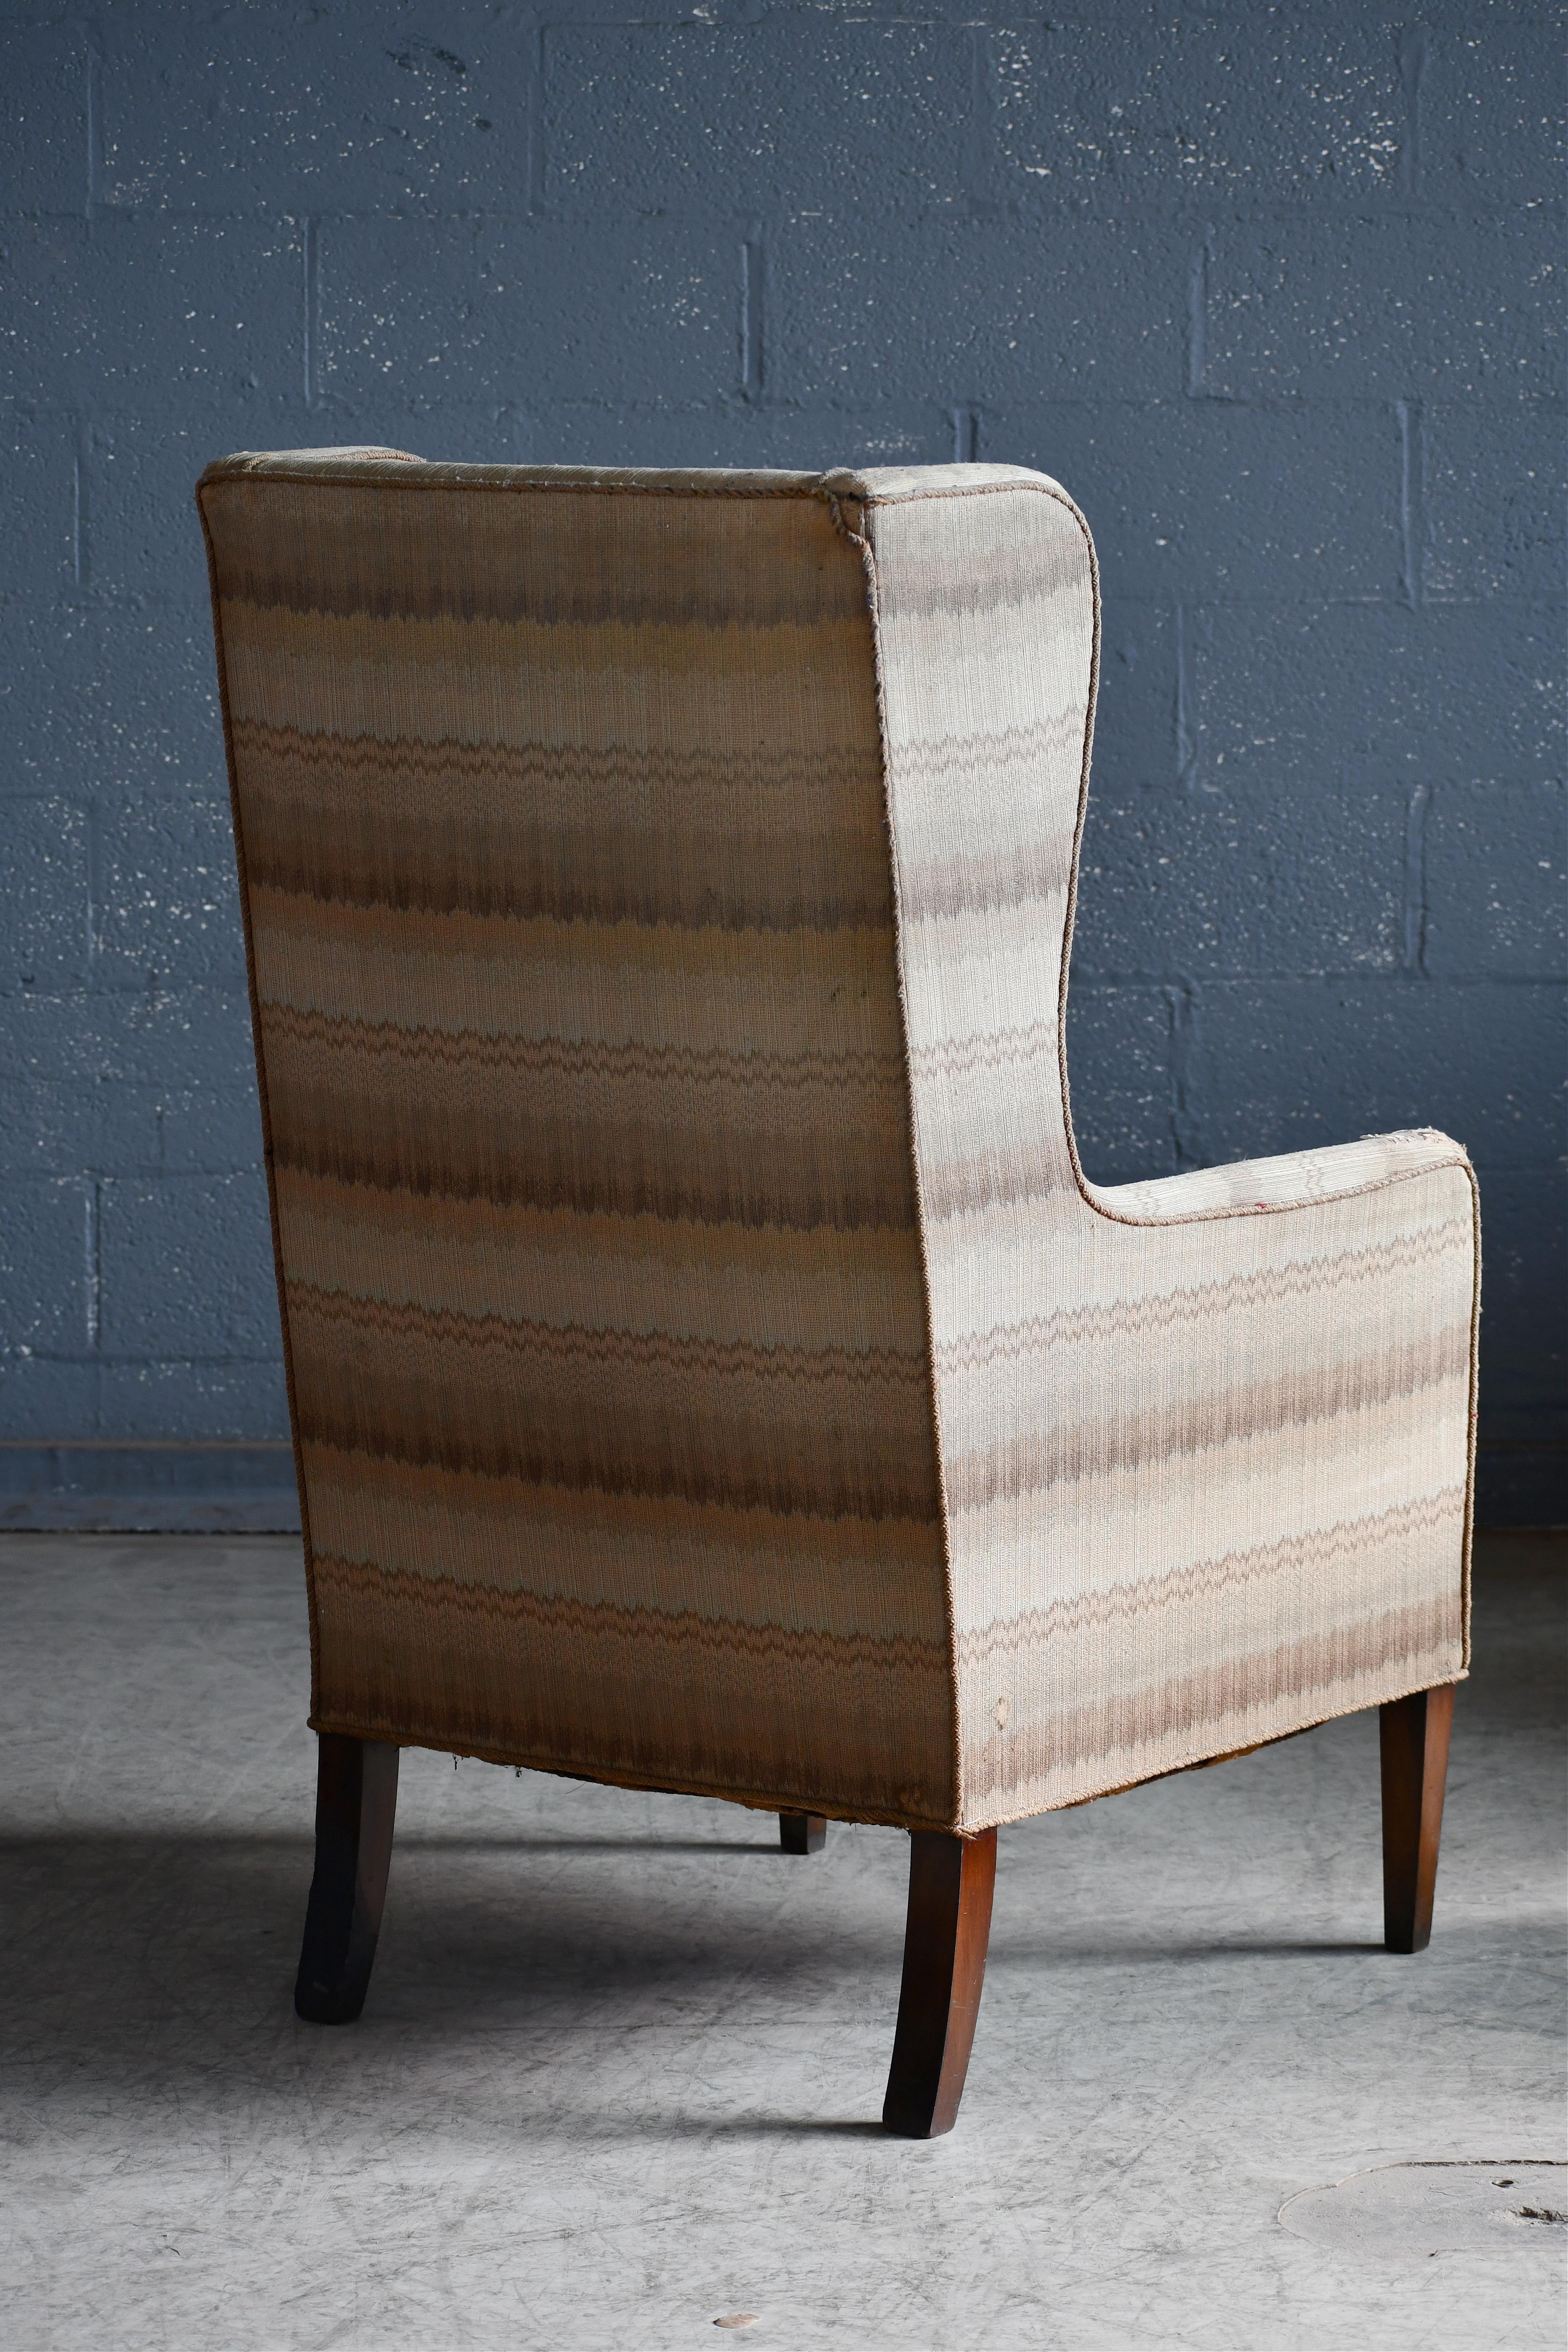 Danish Tall Slim Frits Henningsen Style Highback Lounge Chair, Denmark 1950's For Sale